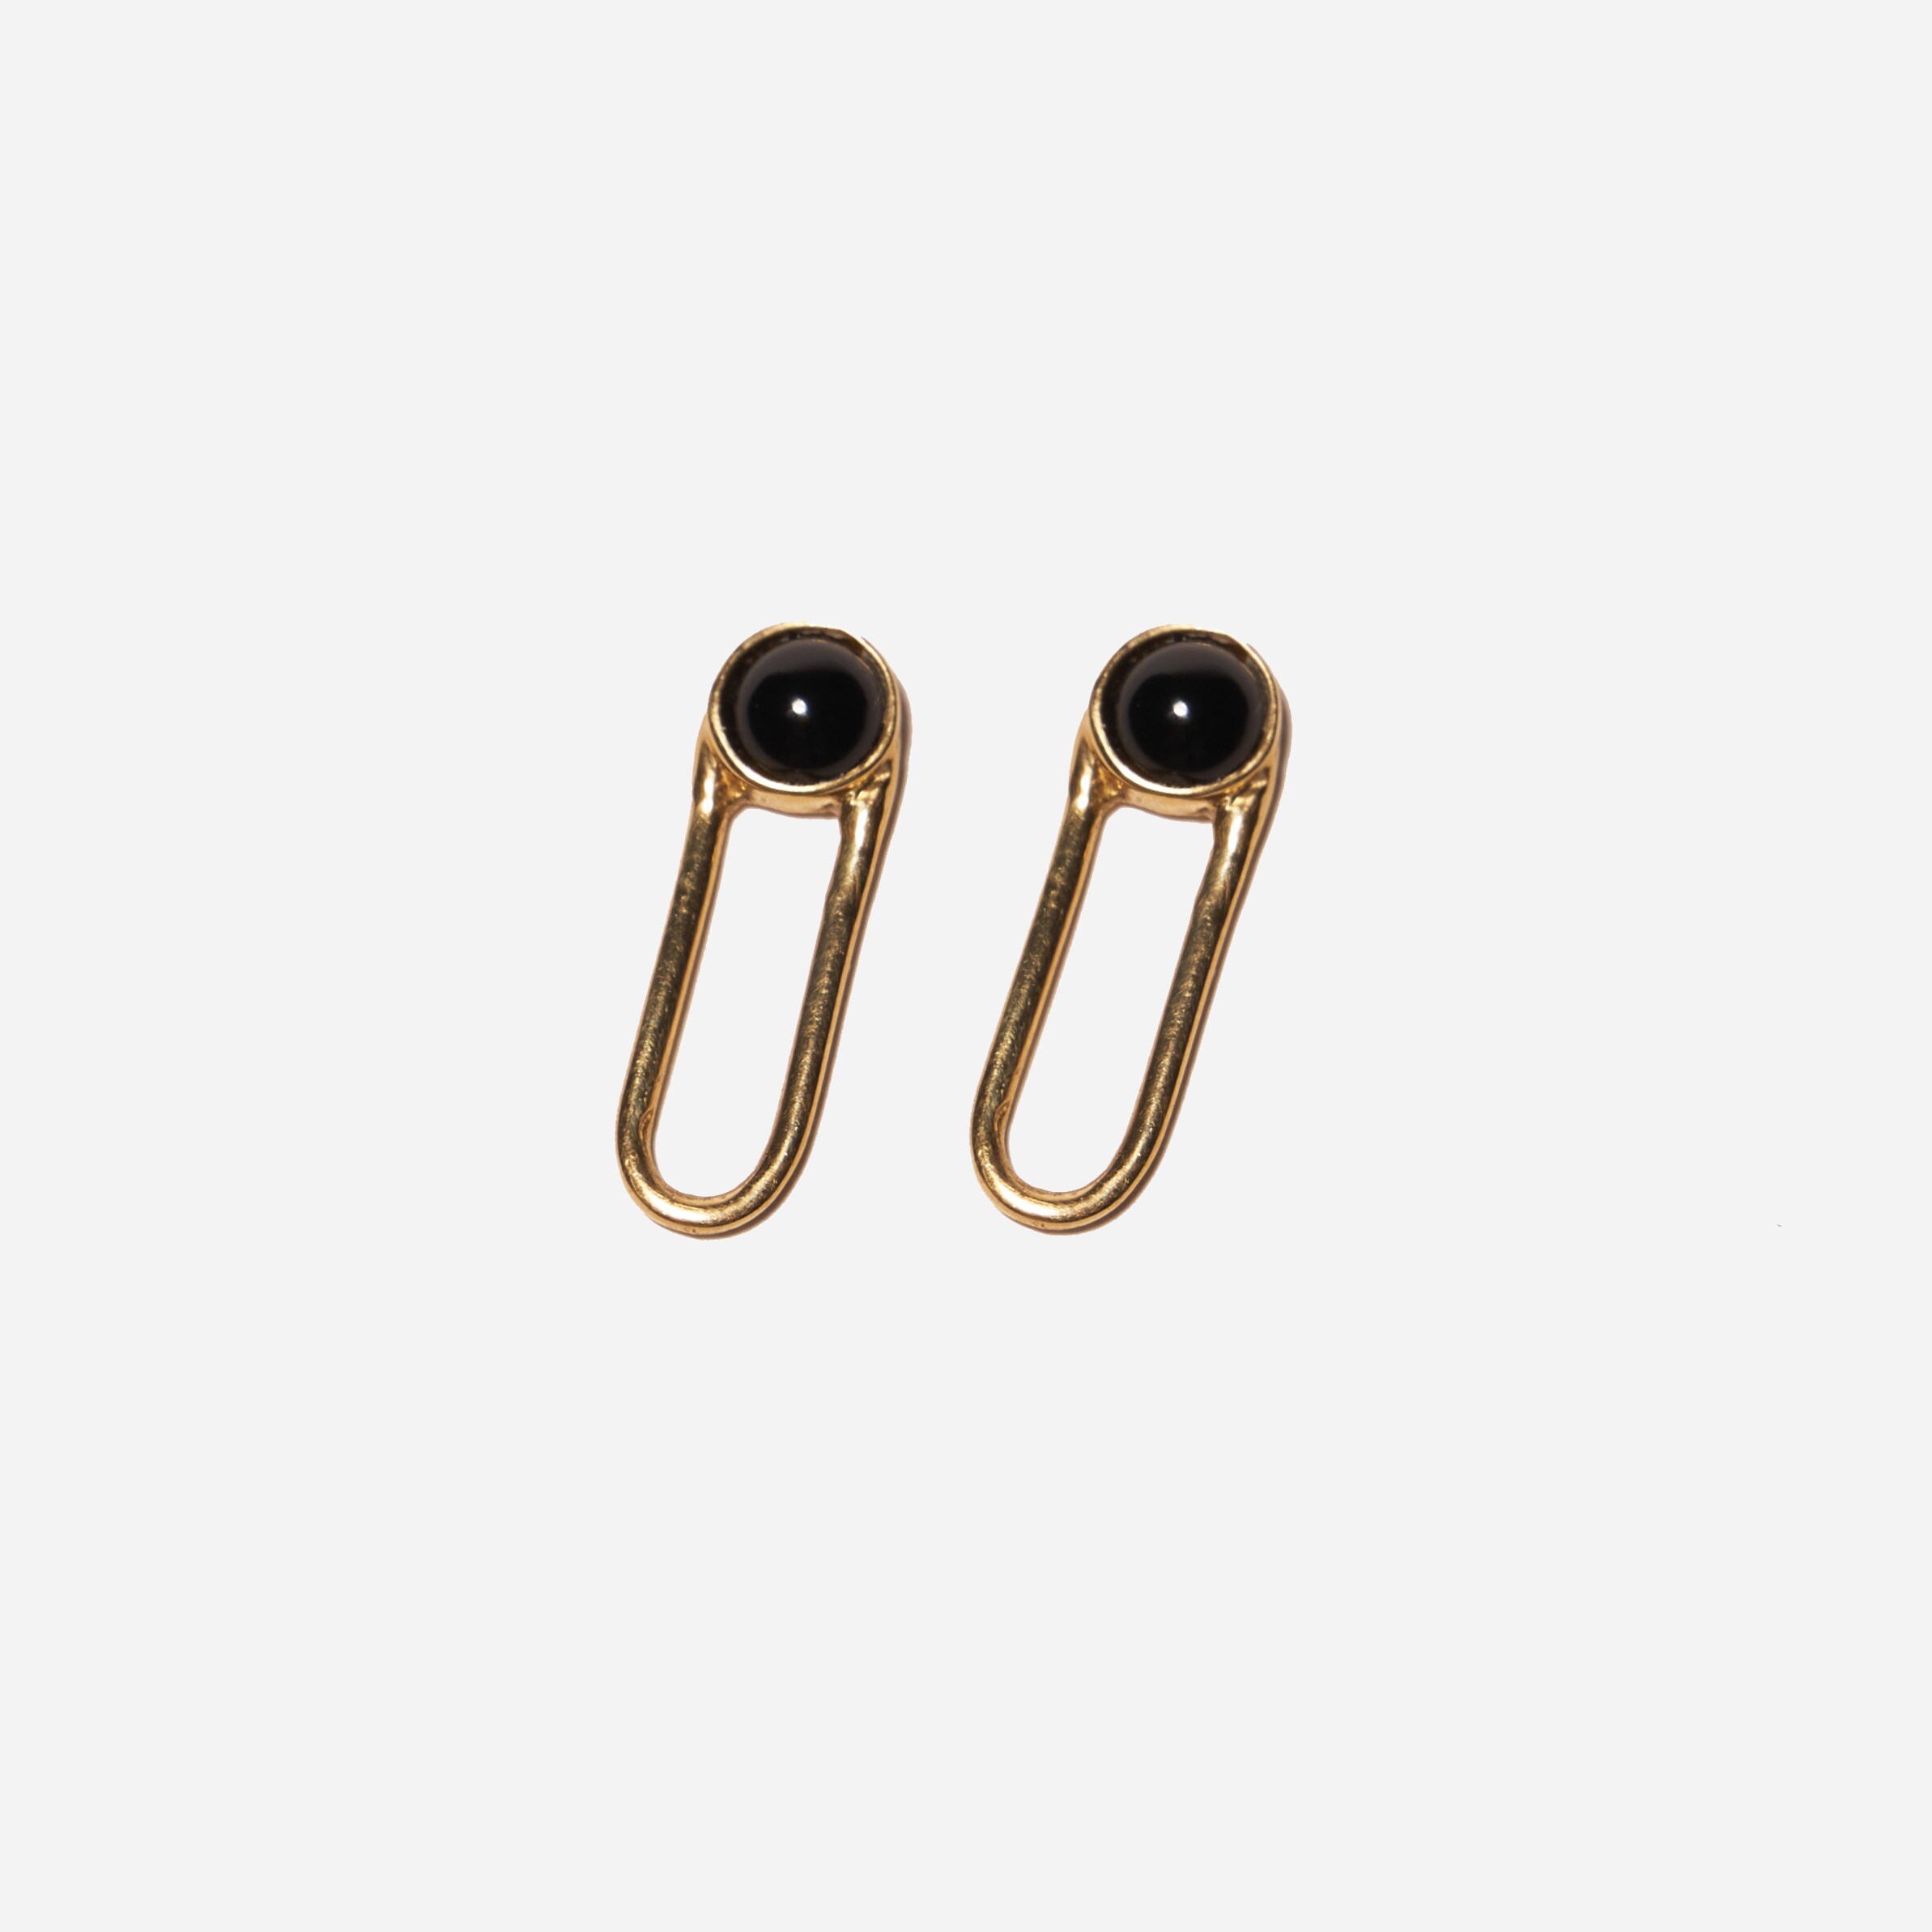  Odette New York® Aura black onyx earrings